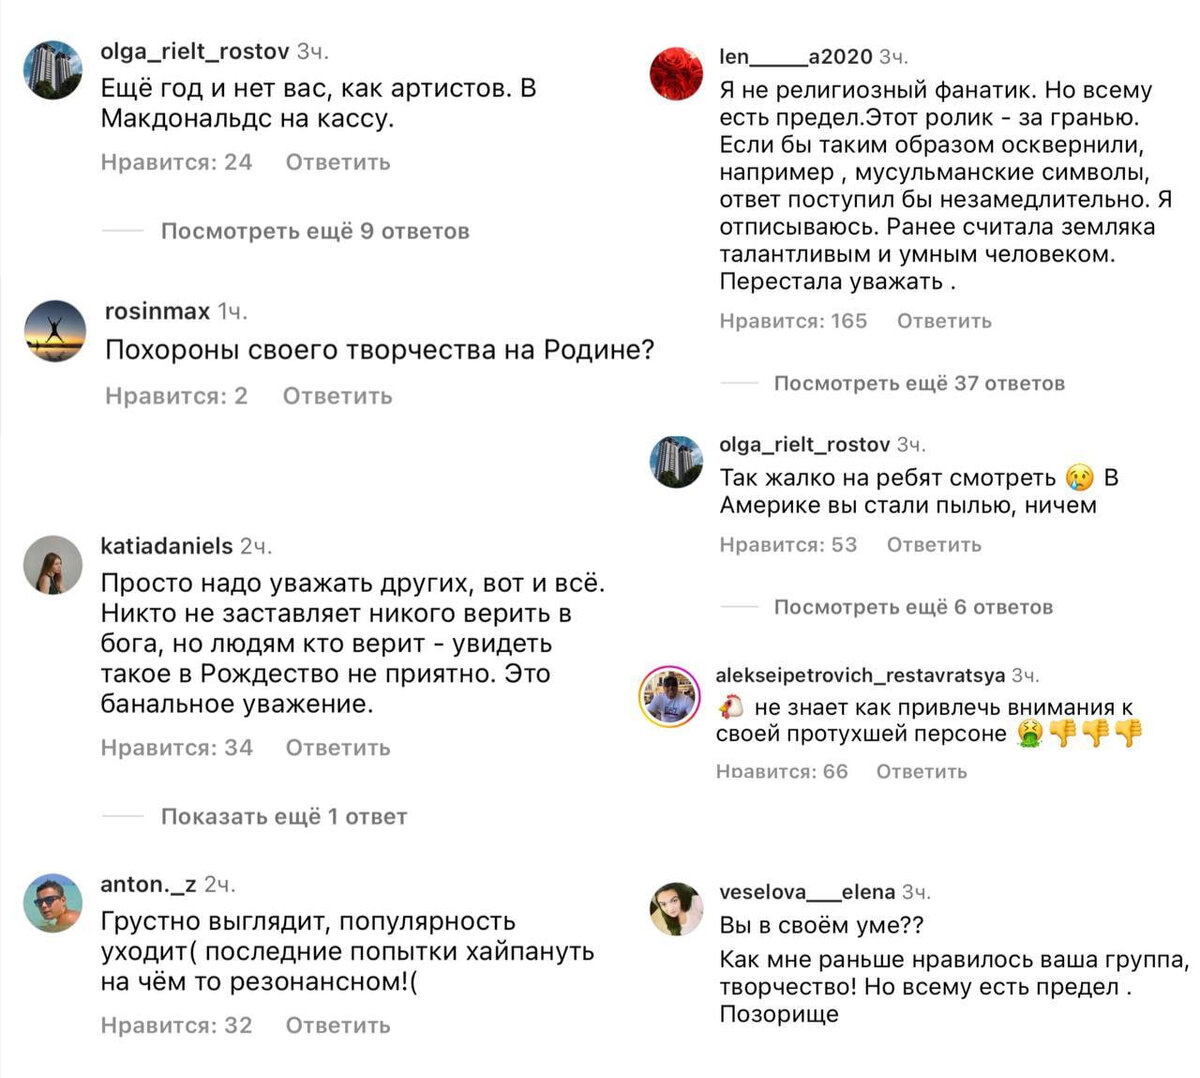 7 января, в день православного Рождества, солист российской группы Little Big Илья Прусикин разместил в социальных сетях видео, на котором он катается на скейте в виде креста.-2